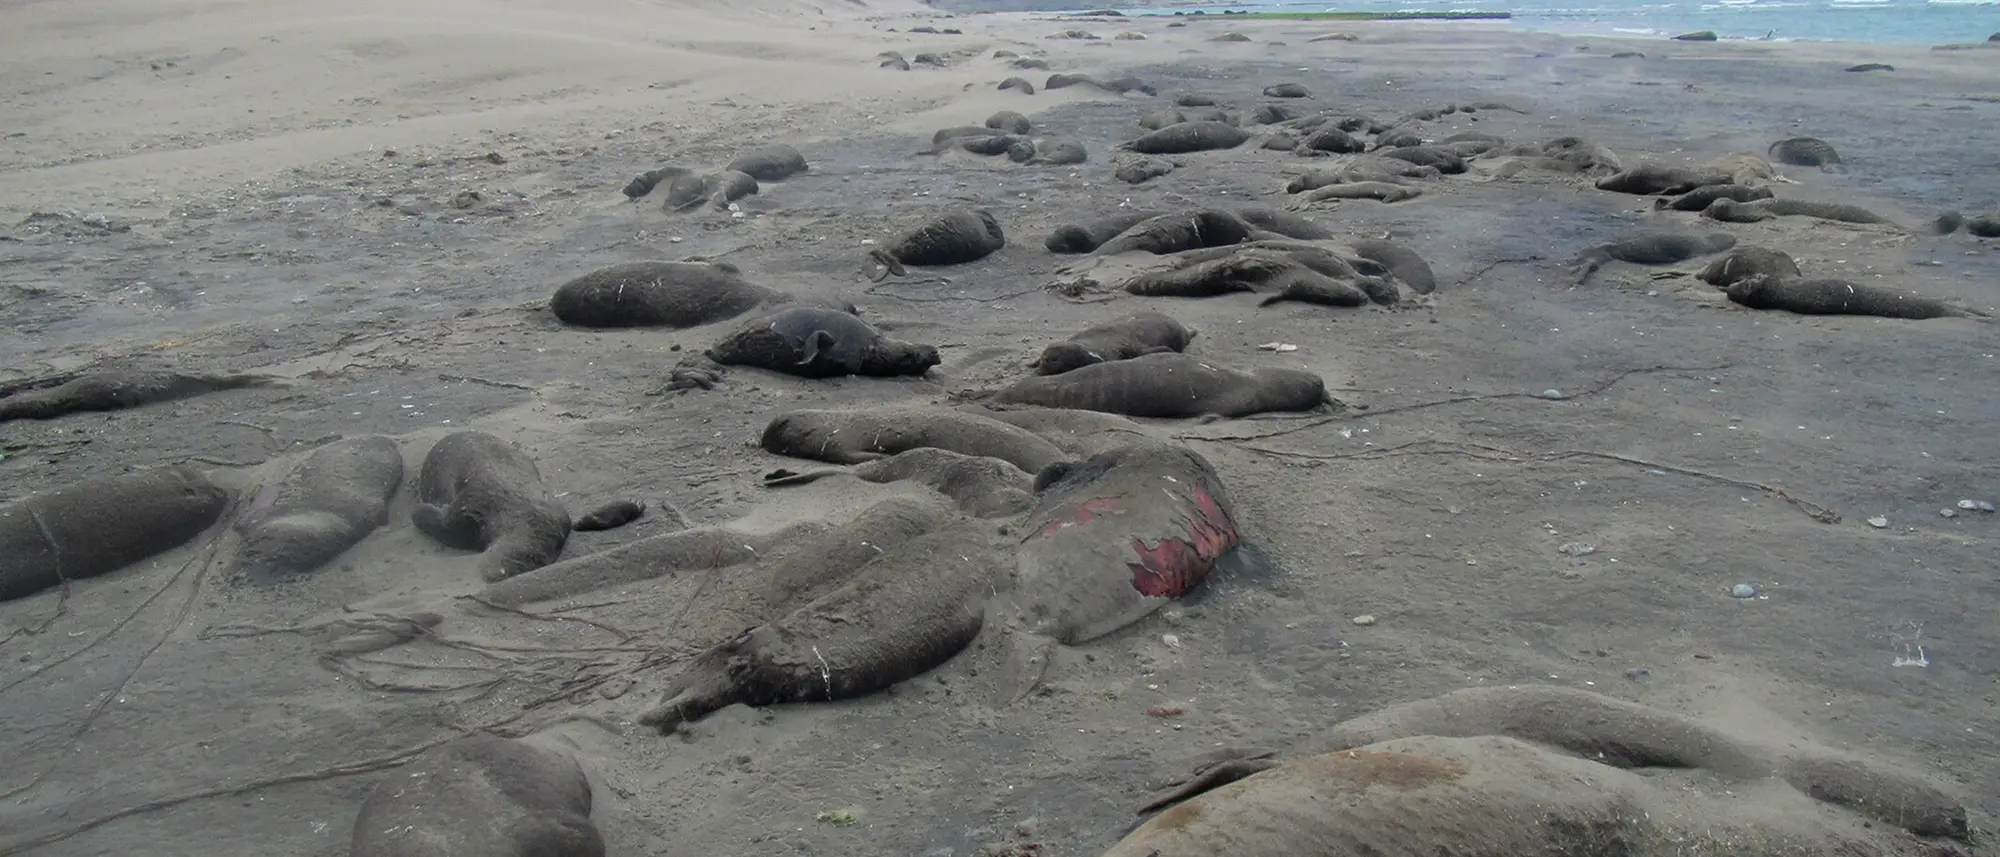 Tote Seeelefanten liegen auf einem einem braunen Sandstrand an der argentinischen Küste, links türmen sich Dünen auf, rechts sieht man das Meer. Der Himmel ist bewölkt